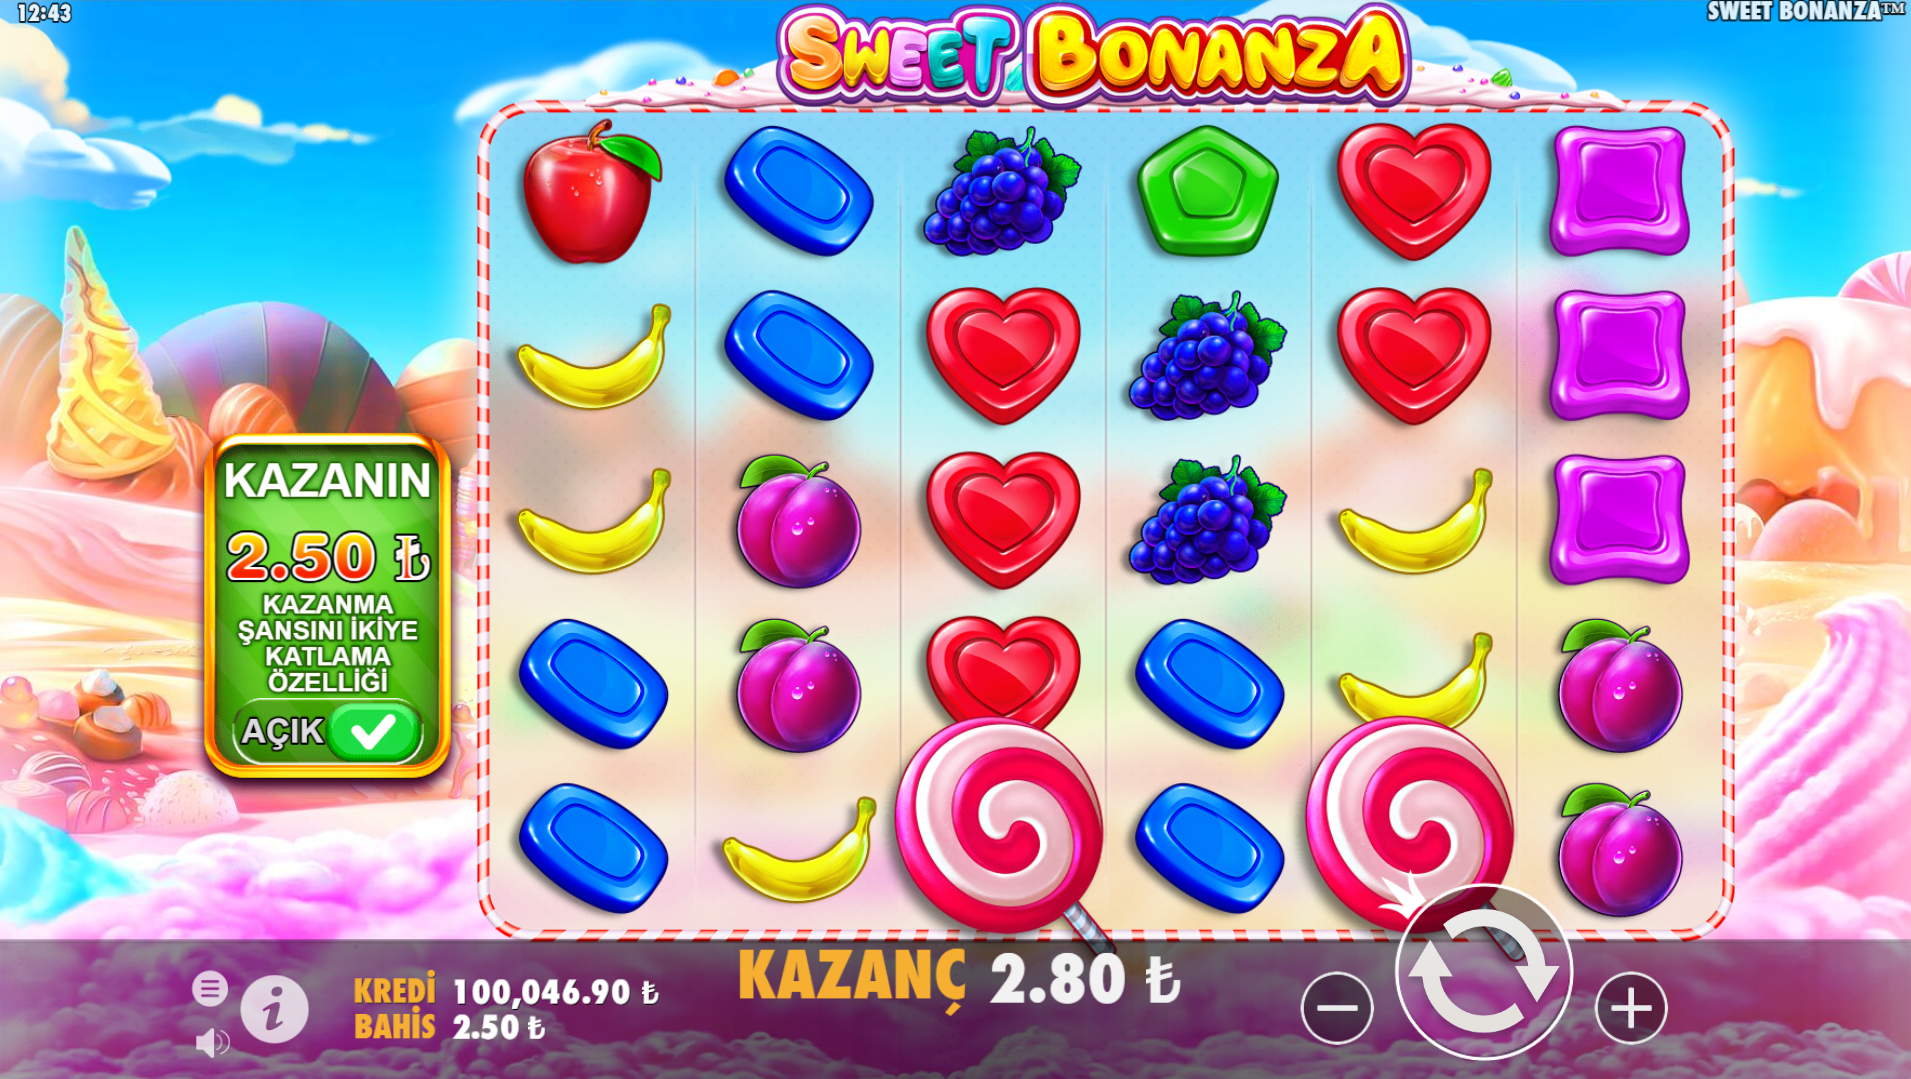 Sweet Bonanza Casino Siteleri